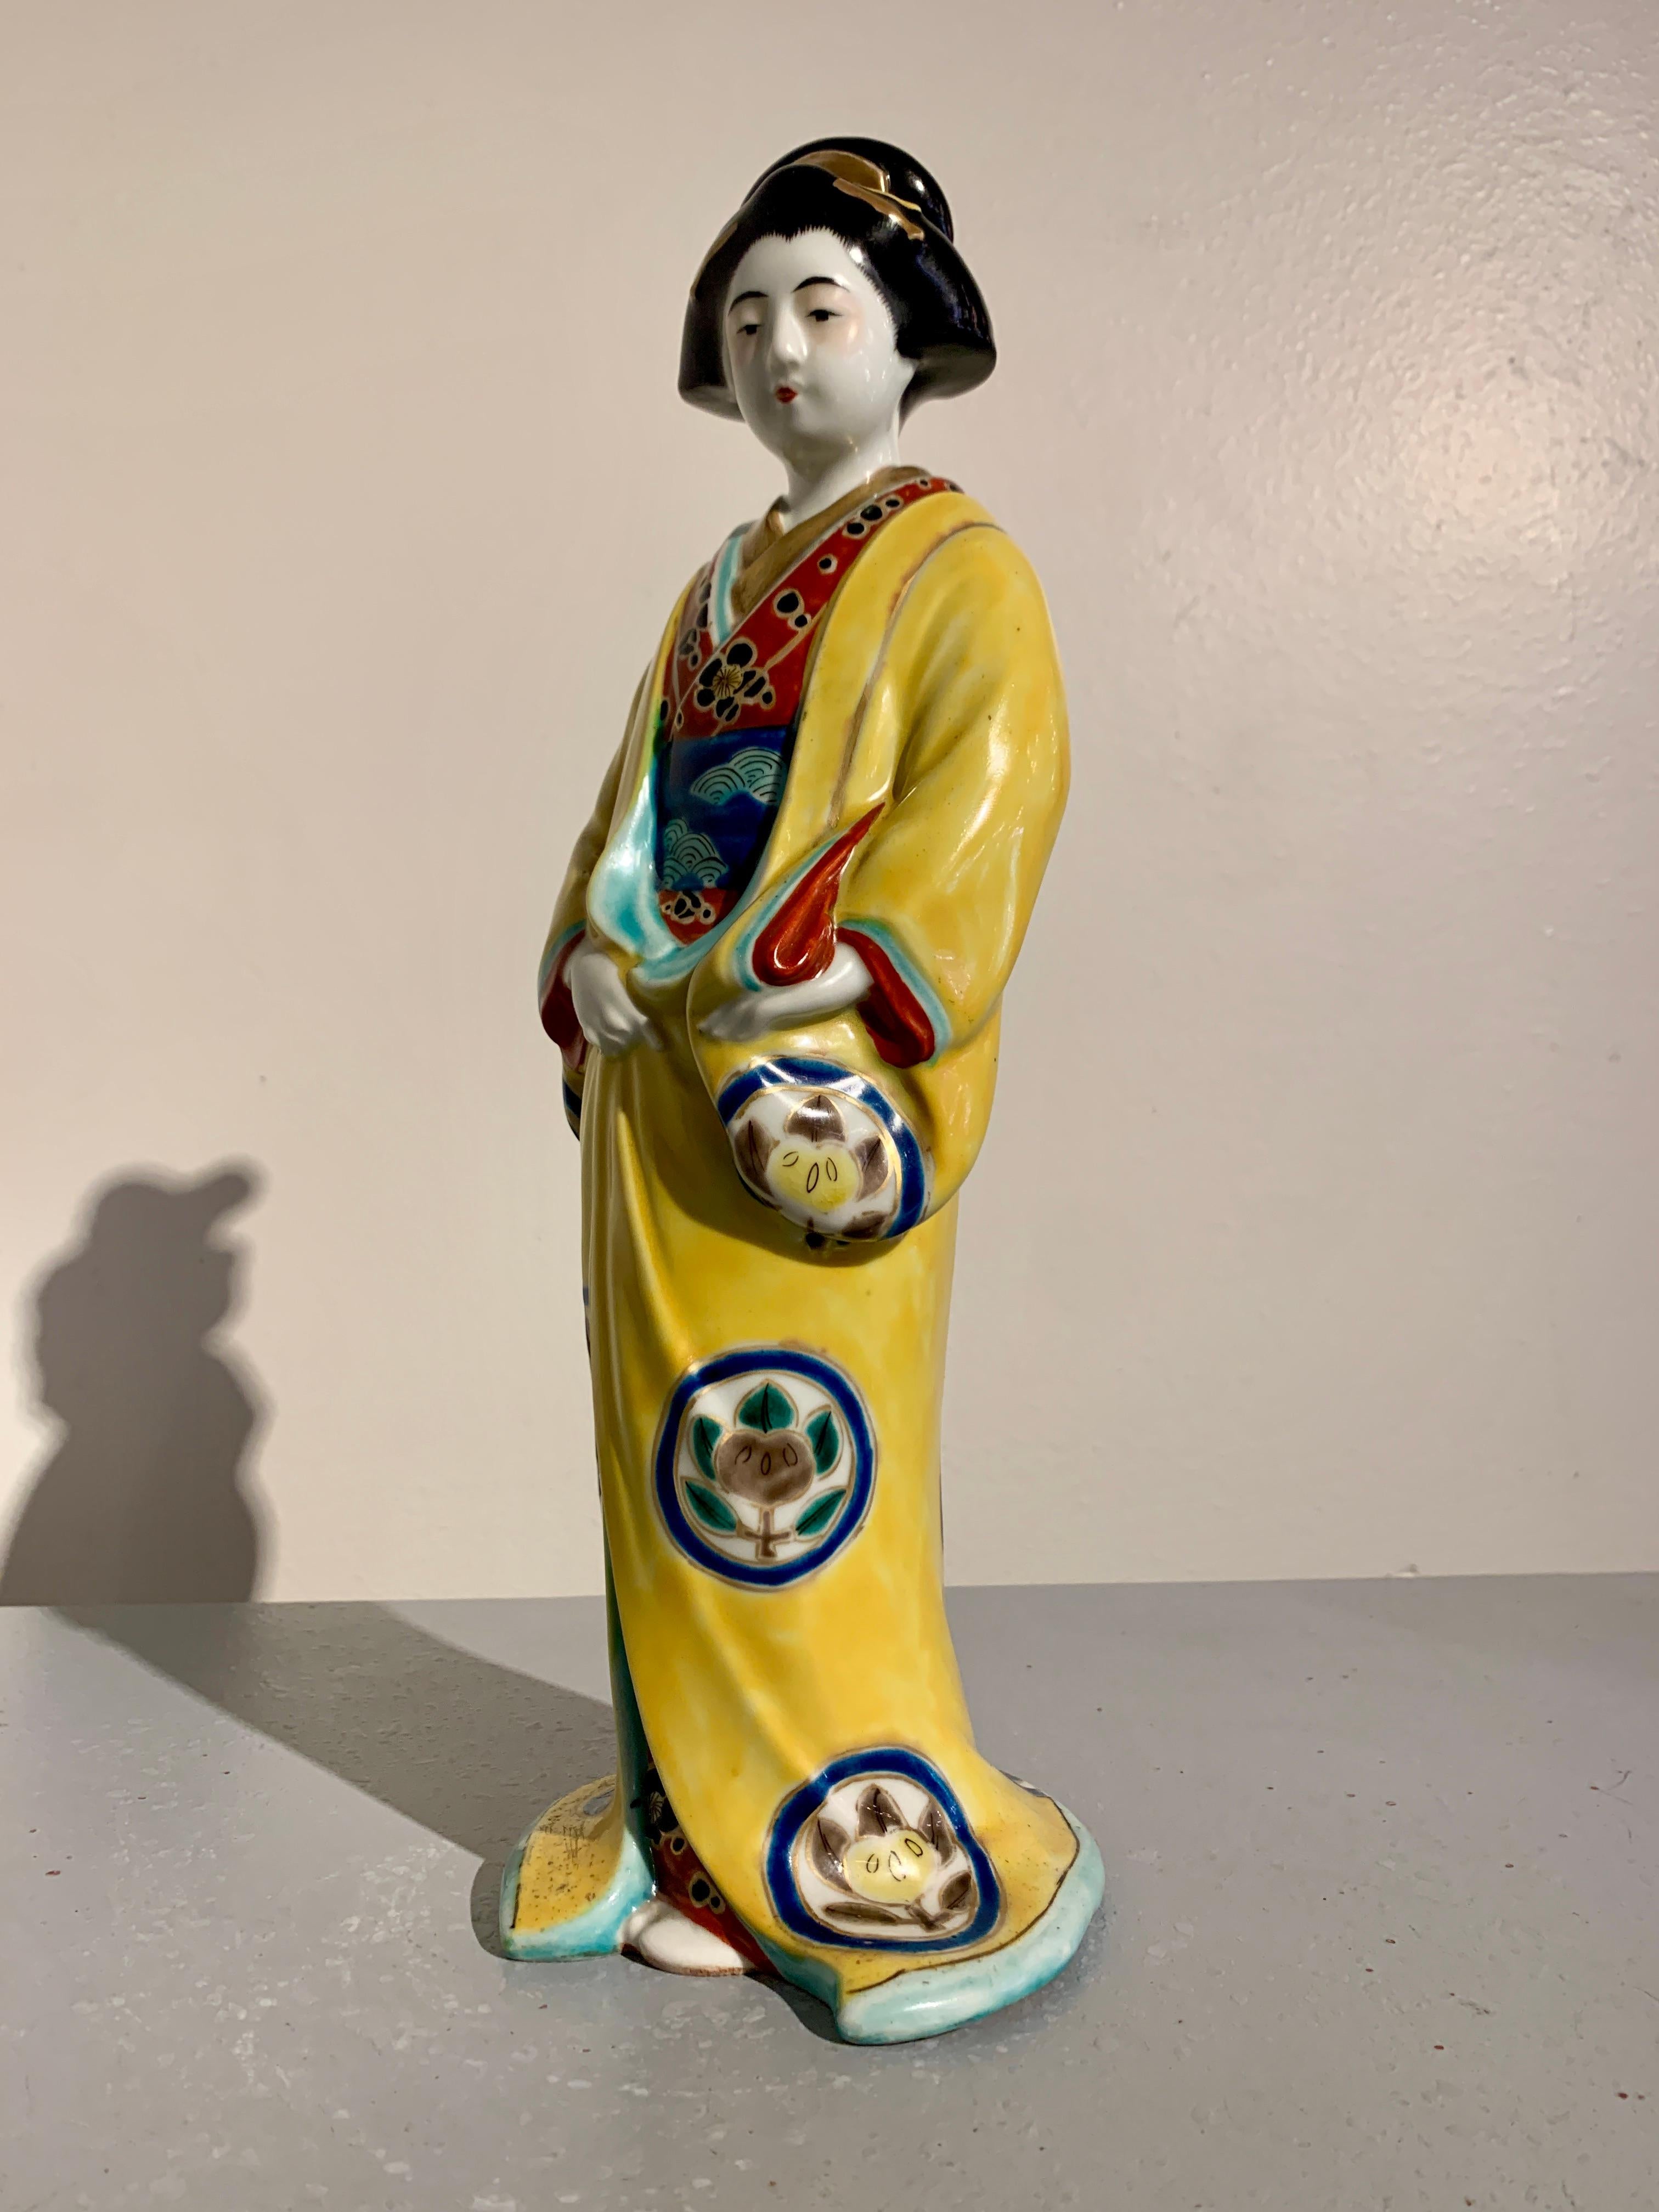 Eine reizvolle japanische Kutani emaillierte Porzellanfigur einer Bijin oder Geisha, frühe Showa-Ära, ca. 1930er Jahre, Japan.

Die elegante Figur einer schönen Frau, die Bijin oder vielleicht auch Giesha genannt wird, ist in einen vollen Kimono und